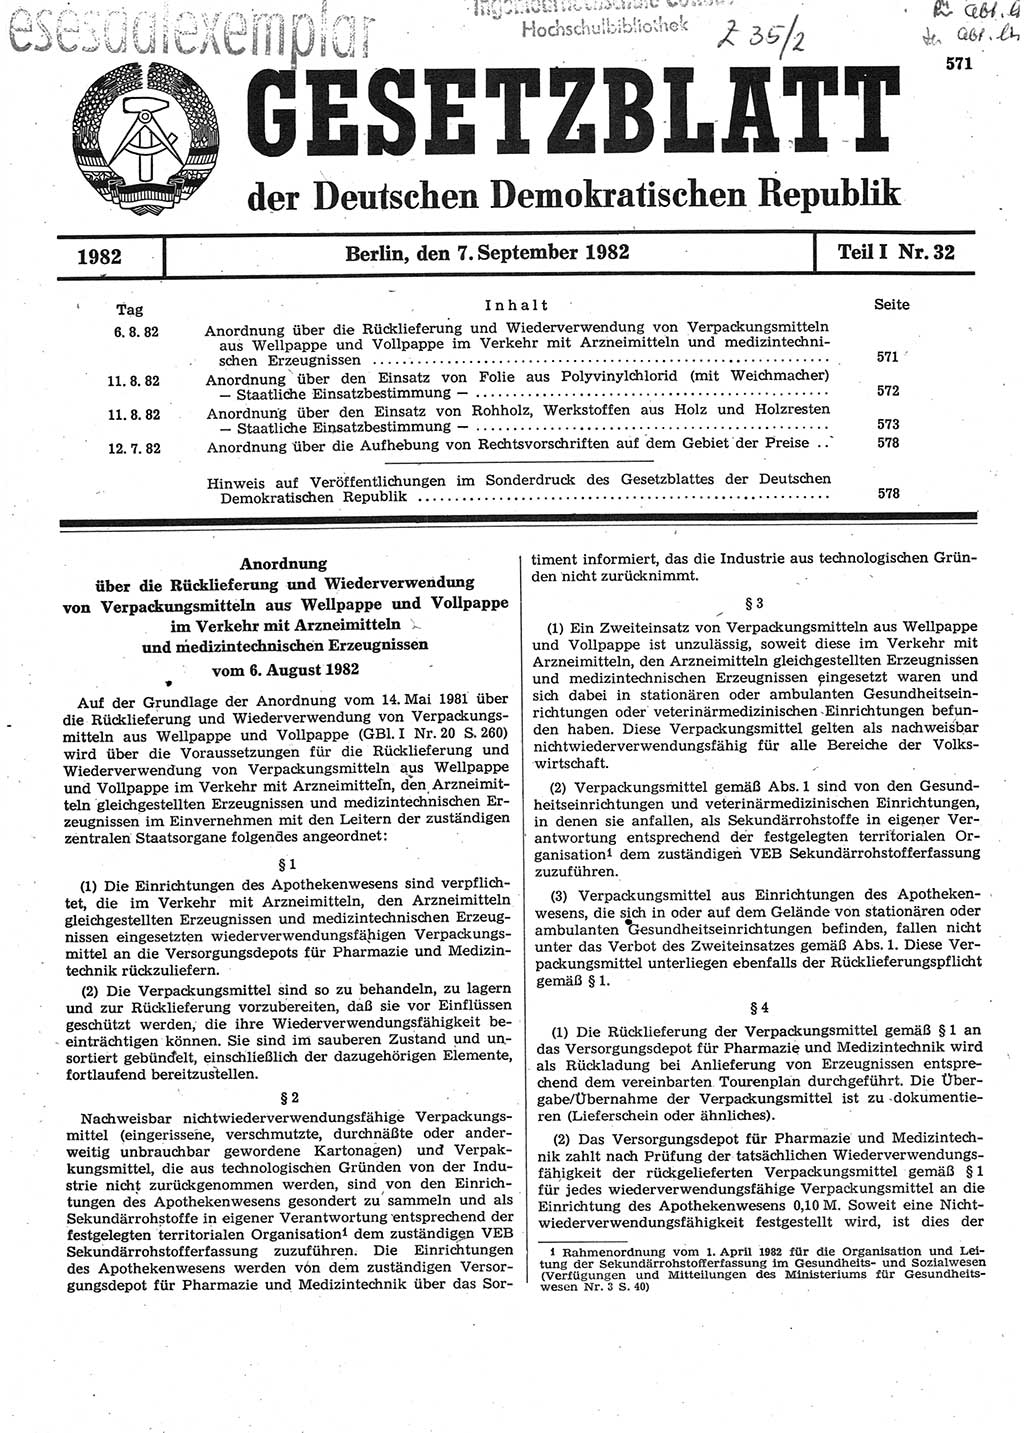 Gesetzblatt (GBl.) der Deutschen Demokratischen Republik (DDR) Teil Ⅰ 1982, Seite 571 (GBl. DDR Ⅰ 1982, S. 571)